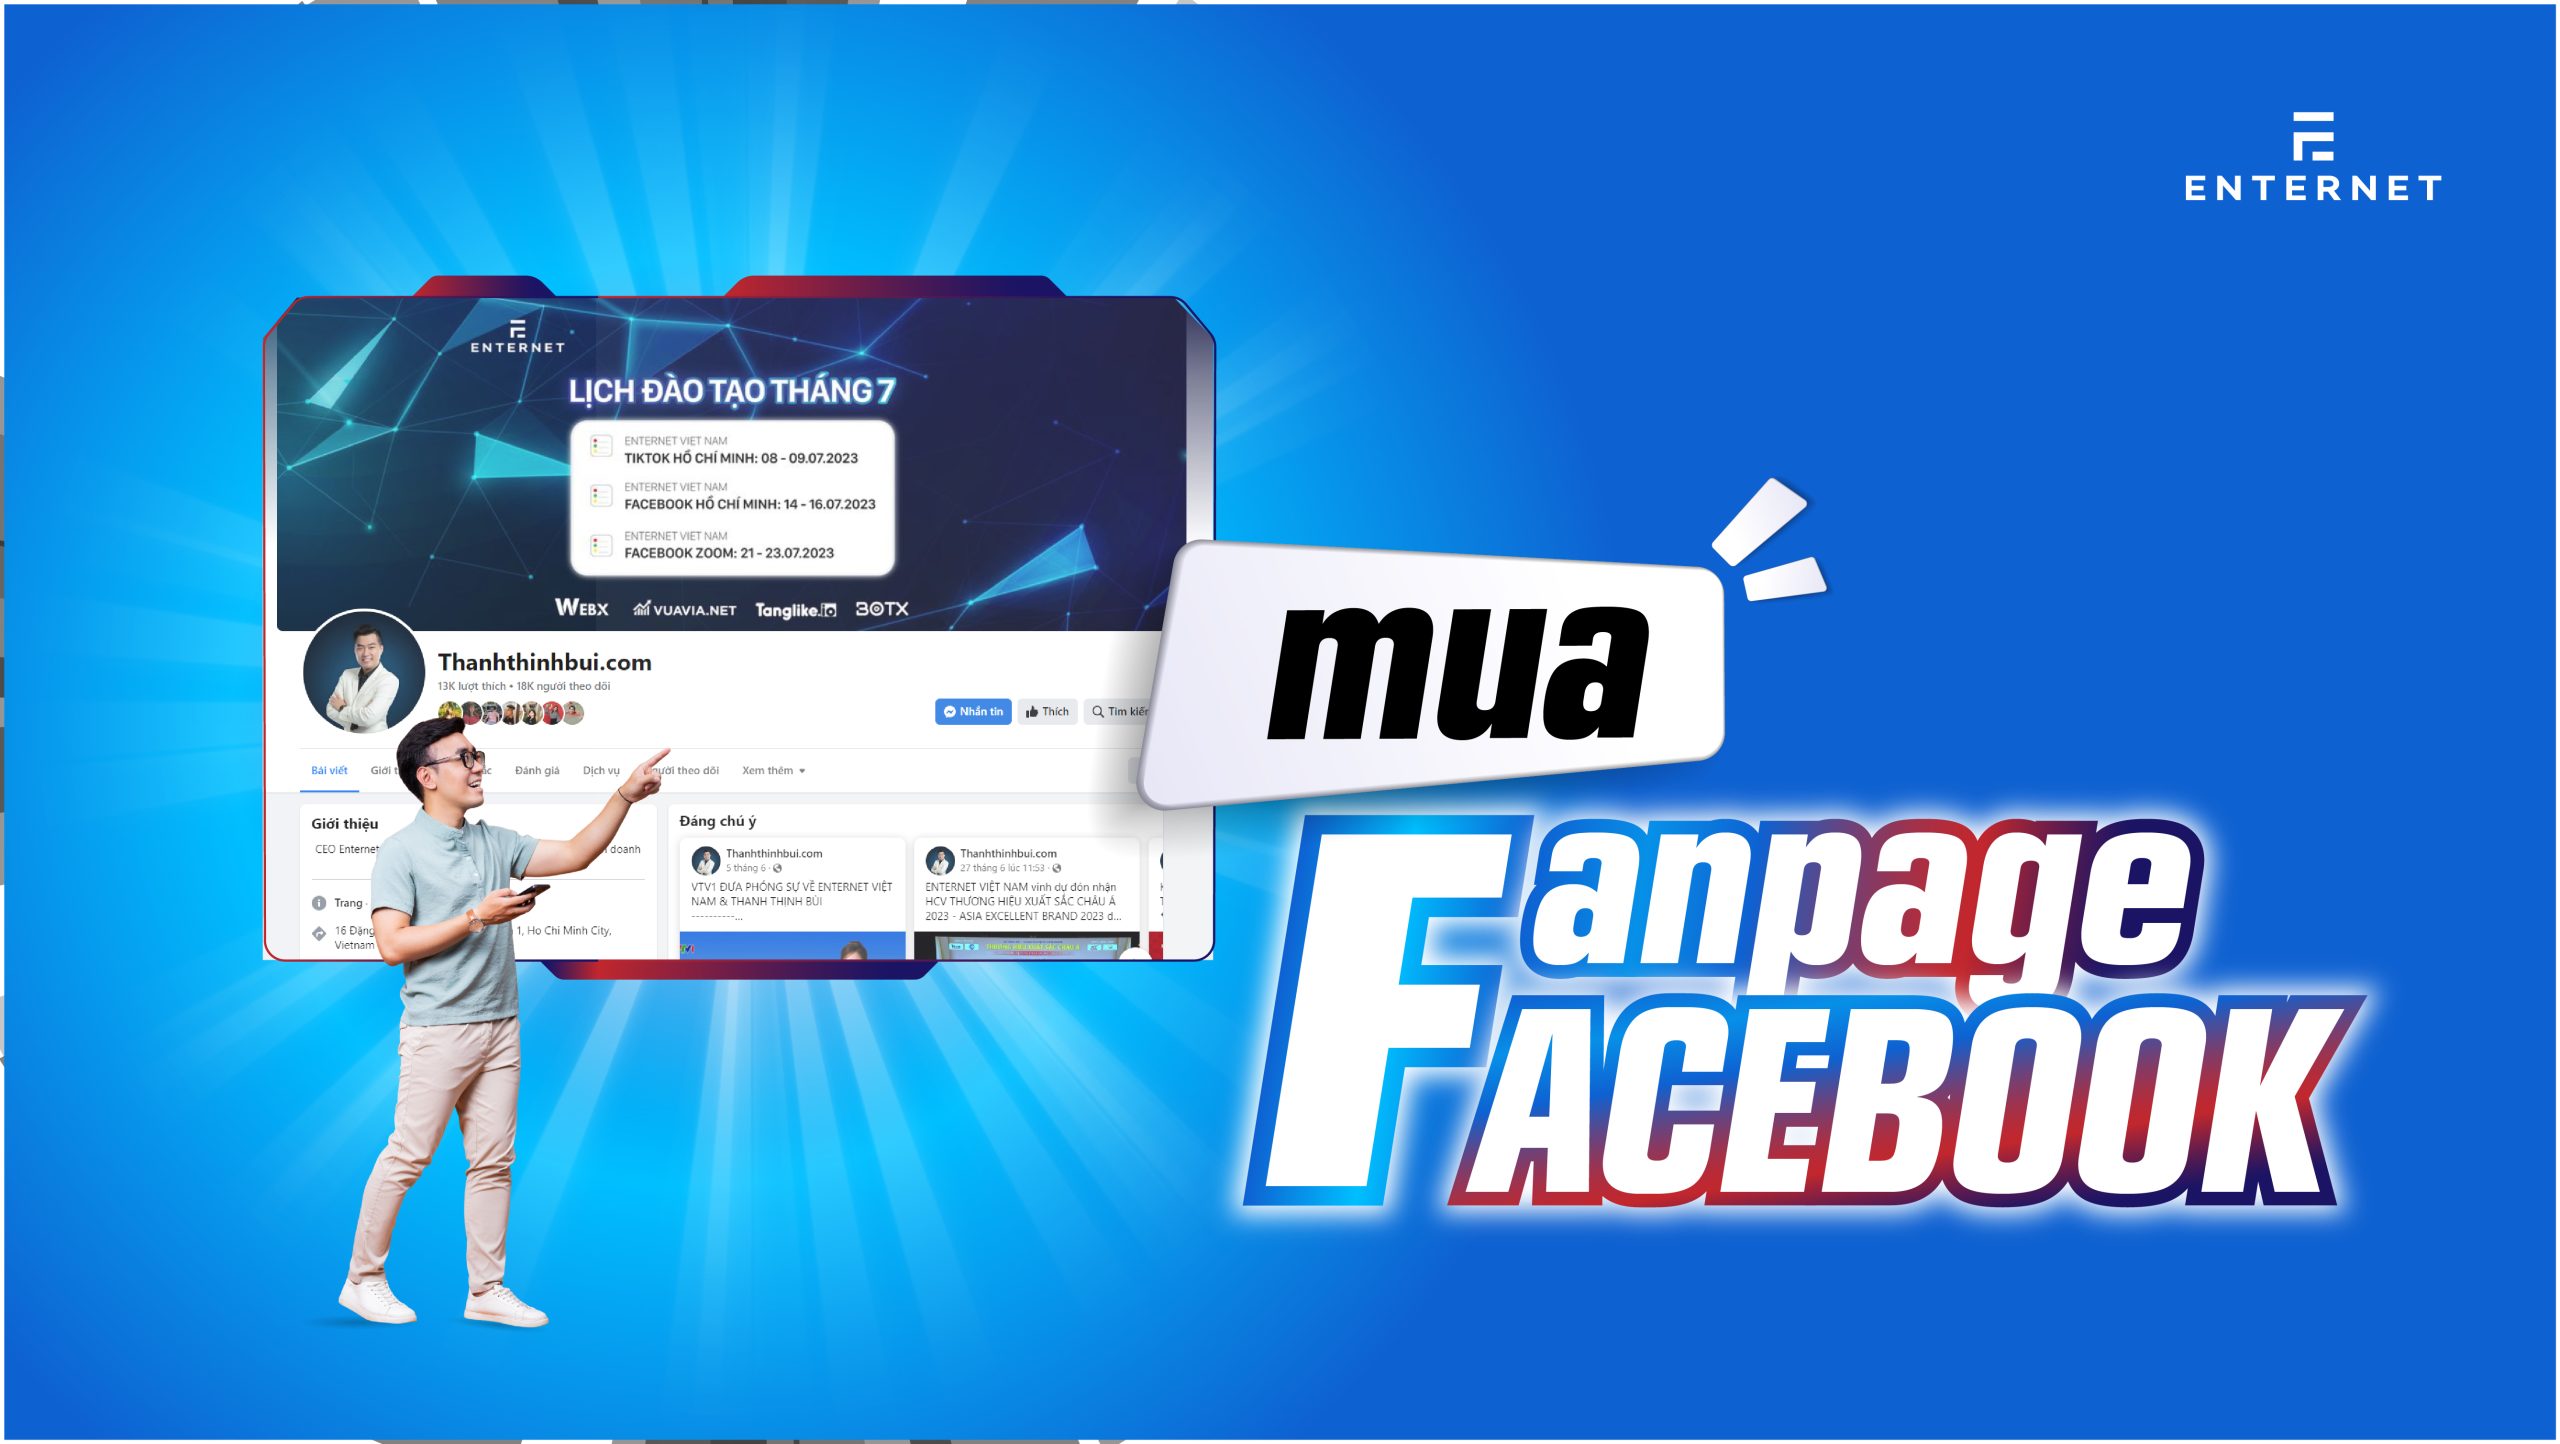 Mua fanpage Facebook